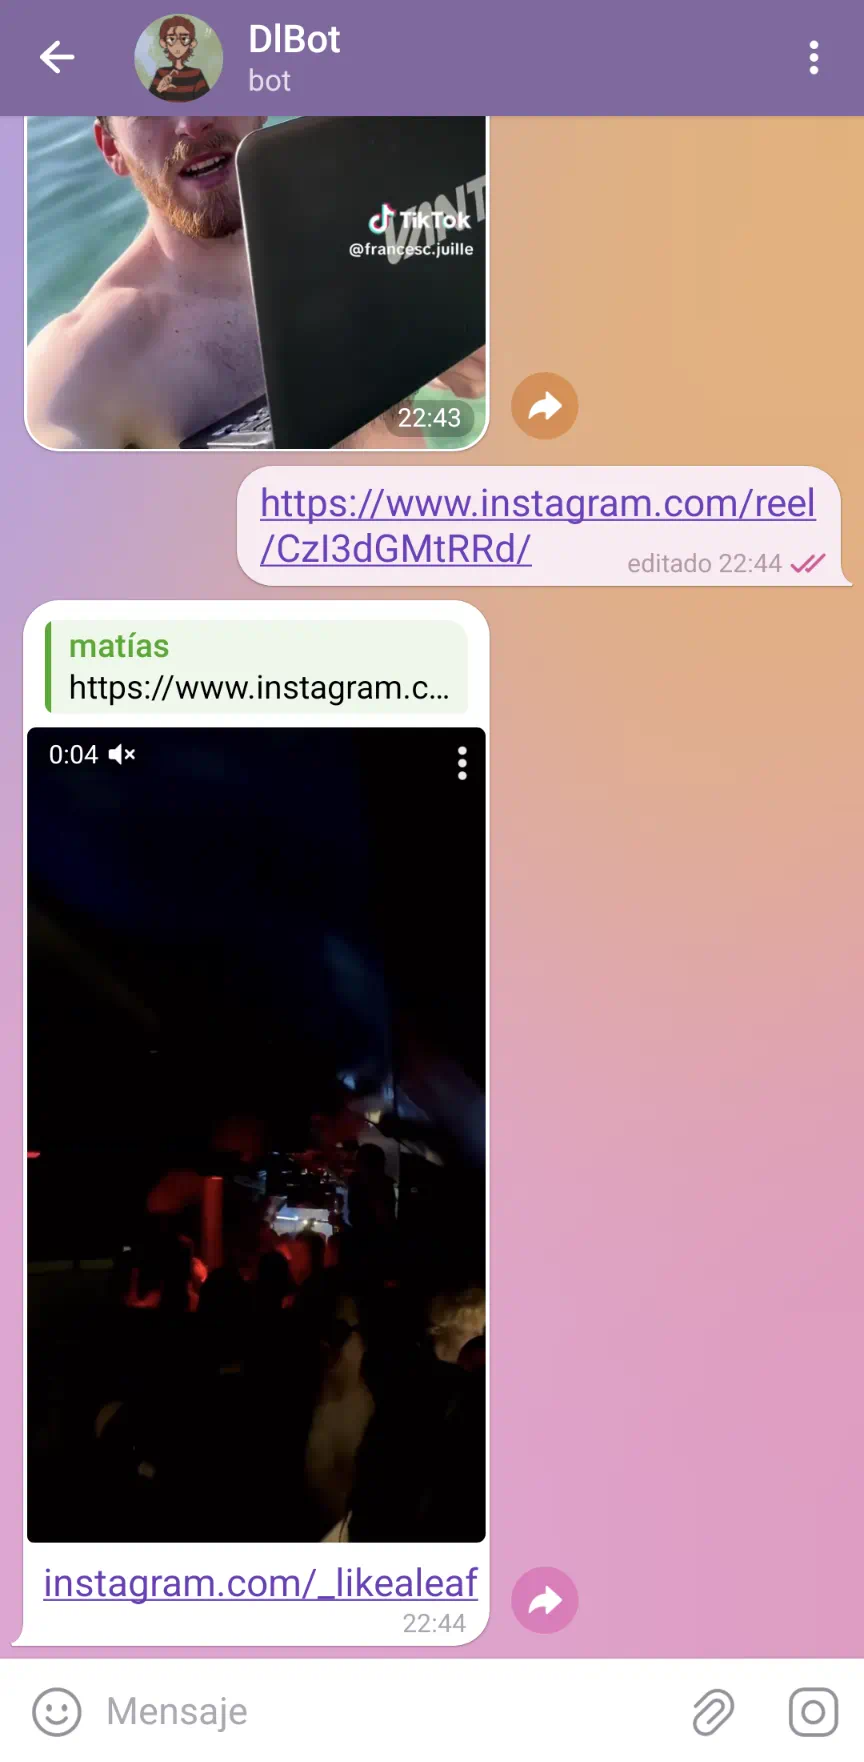 Una captura de pantalla de Telegram de una conversación con DlBot, en la que se envía un link de Instagram Reels y DlBot le contesta con un video subido.